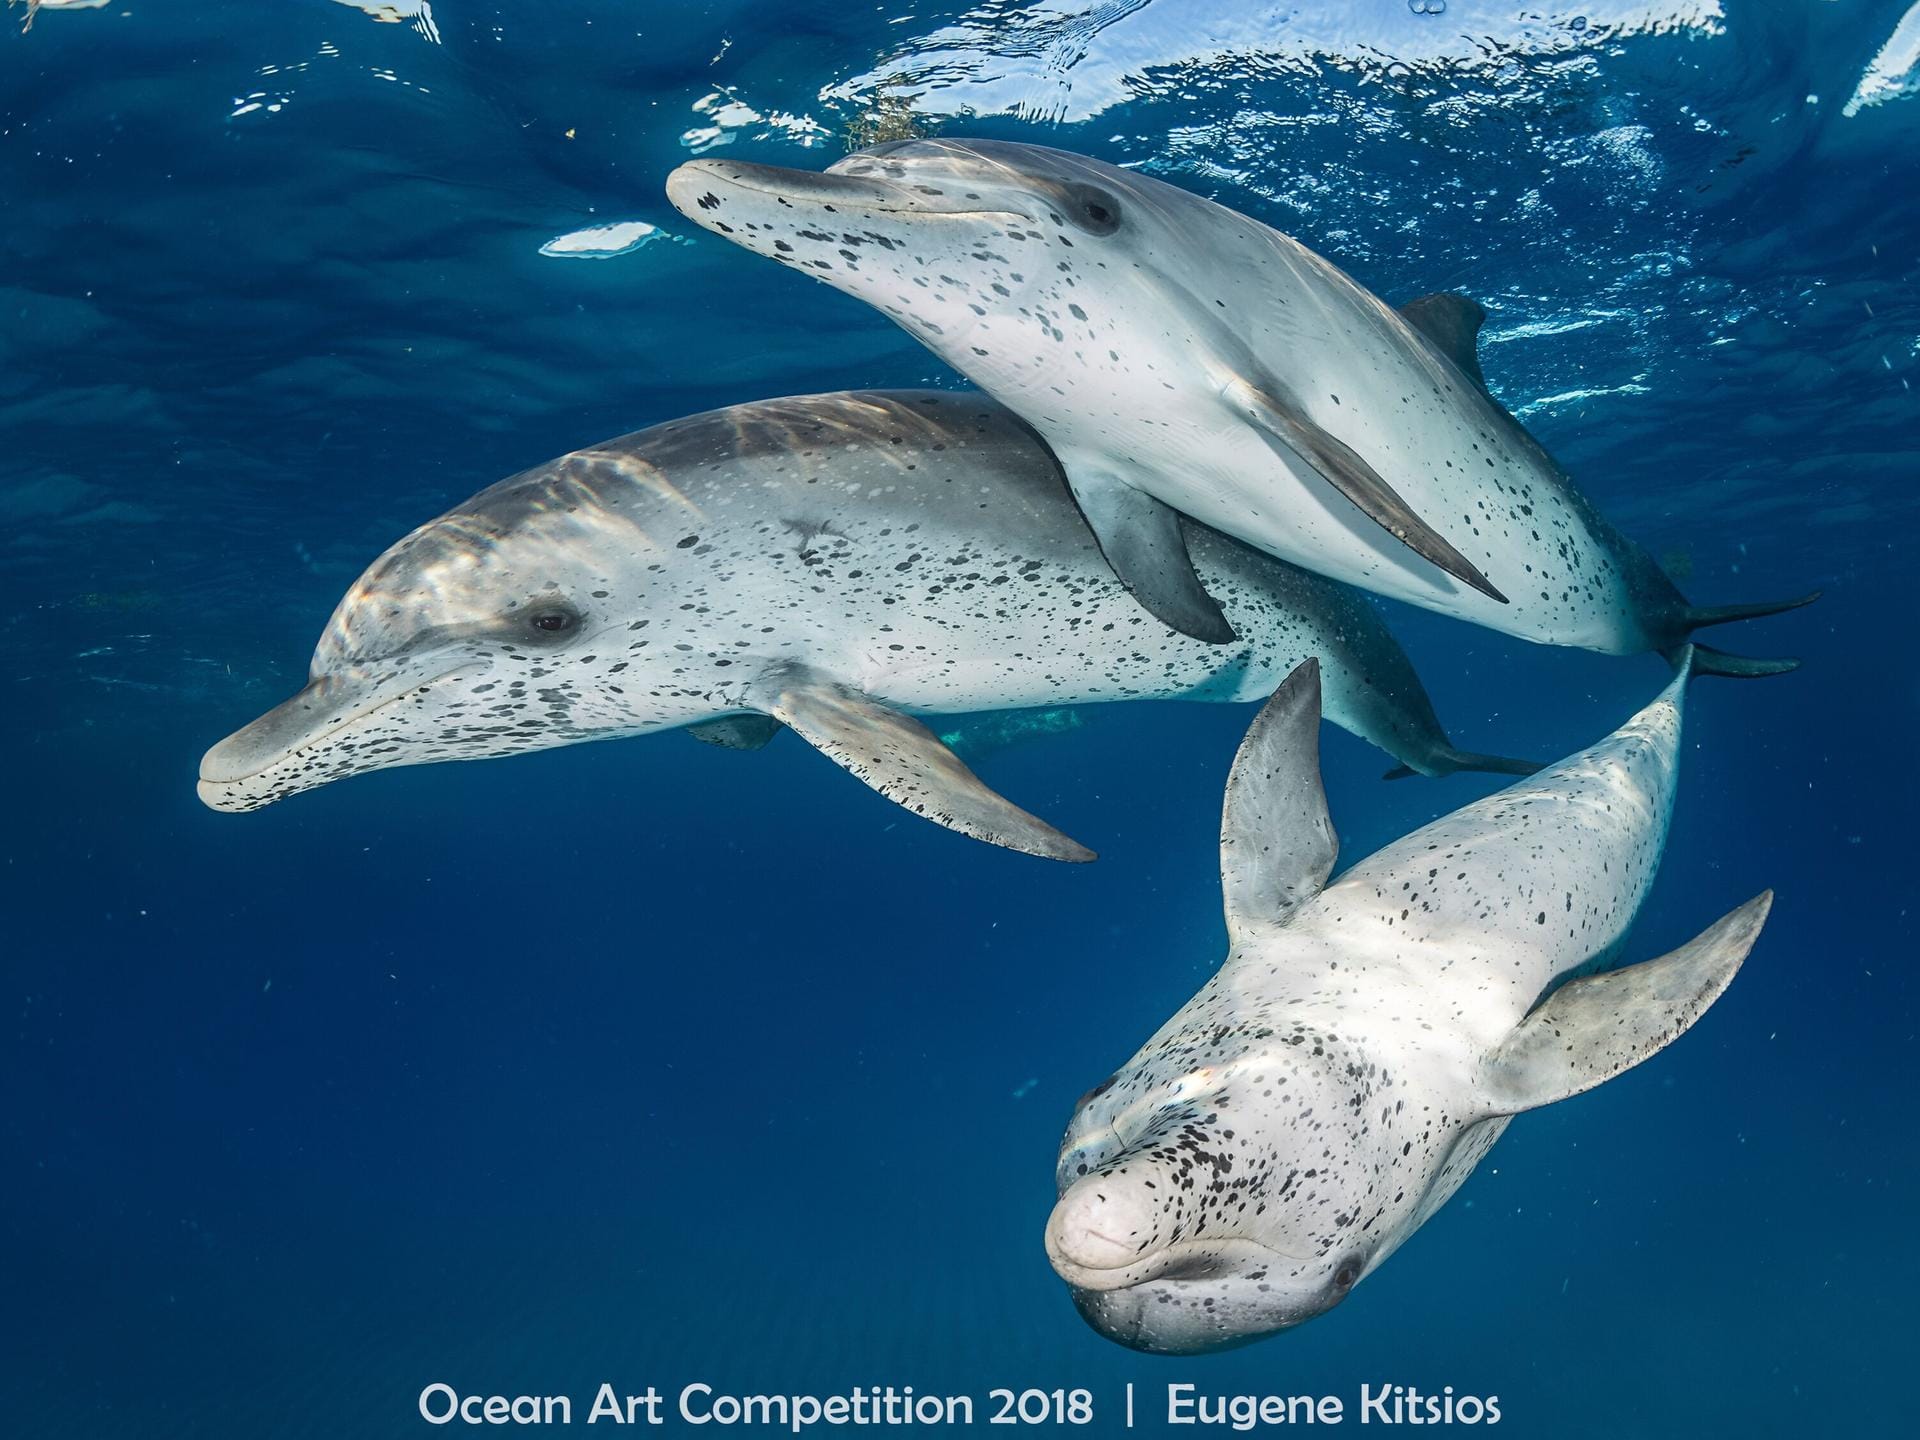 Spitzenreiter der Kategorie "Mirrorless Wide Angle" ("Weitwinkel ohne Spiegelreflex-Kamera"): Die Aufnahme wurde in den Gewässern vor den Bahamas-Inseln gemacht. Die sogenannten Fleckendelfine sind mitunter sehr zutraulich.